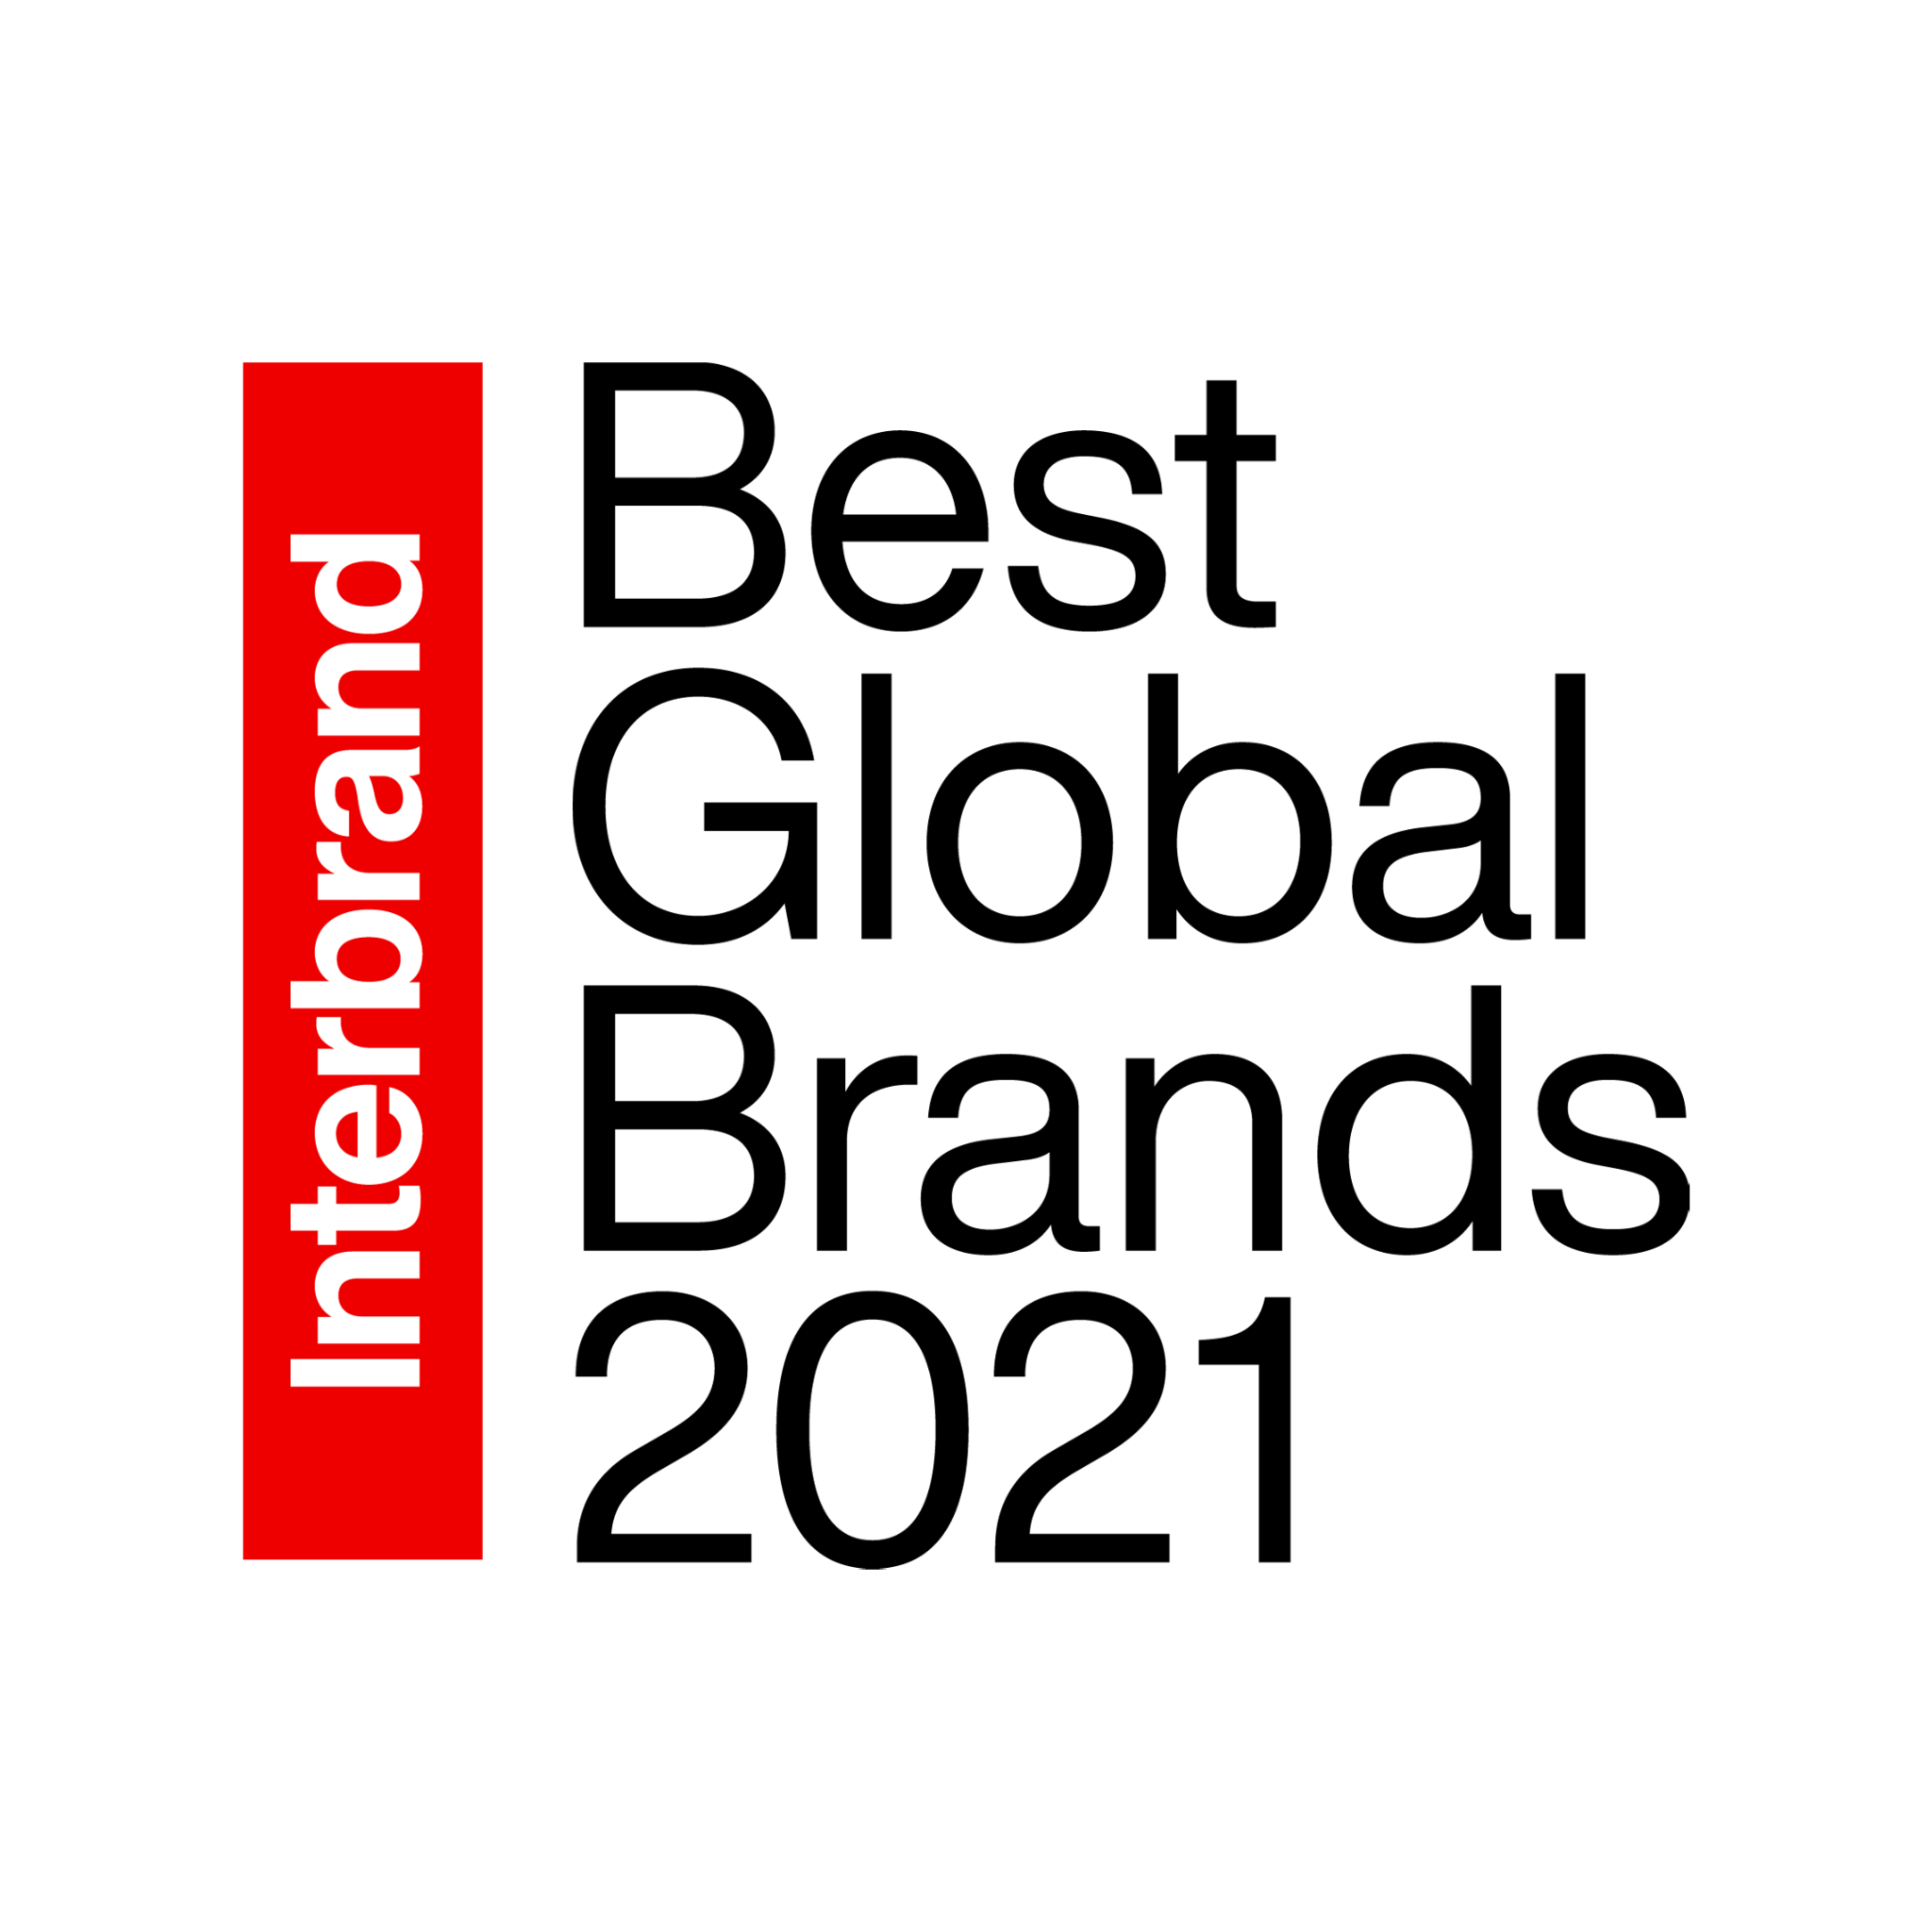 Foto de Samsung solidifica su valor de marca al clasificarse entre las cinco mejores marcas globales de Interbrand en 2021